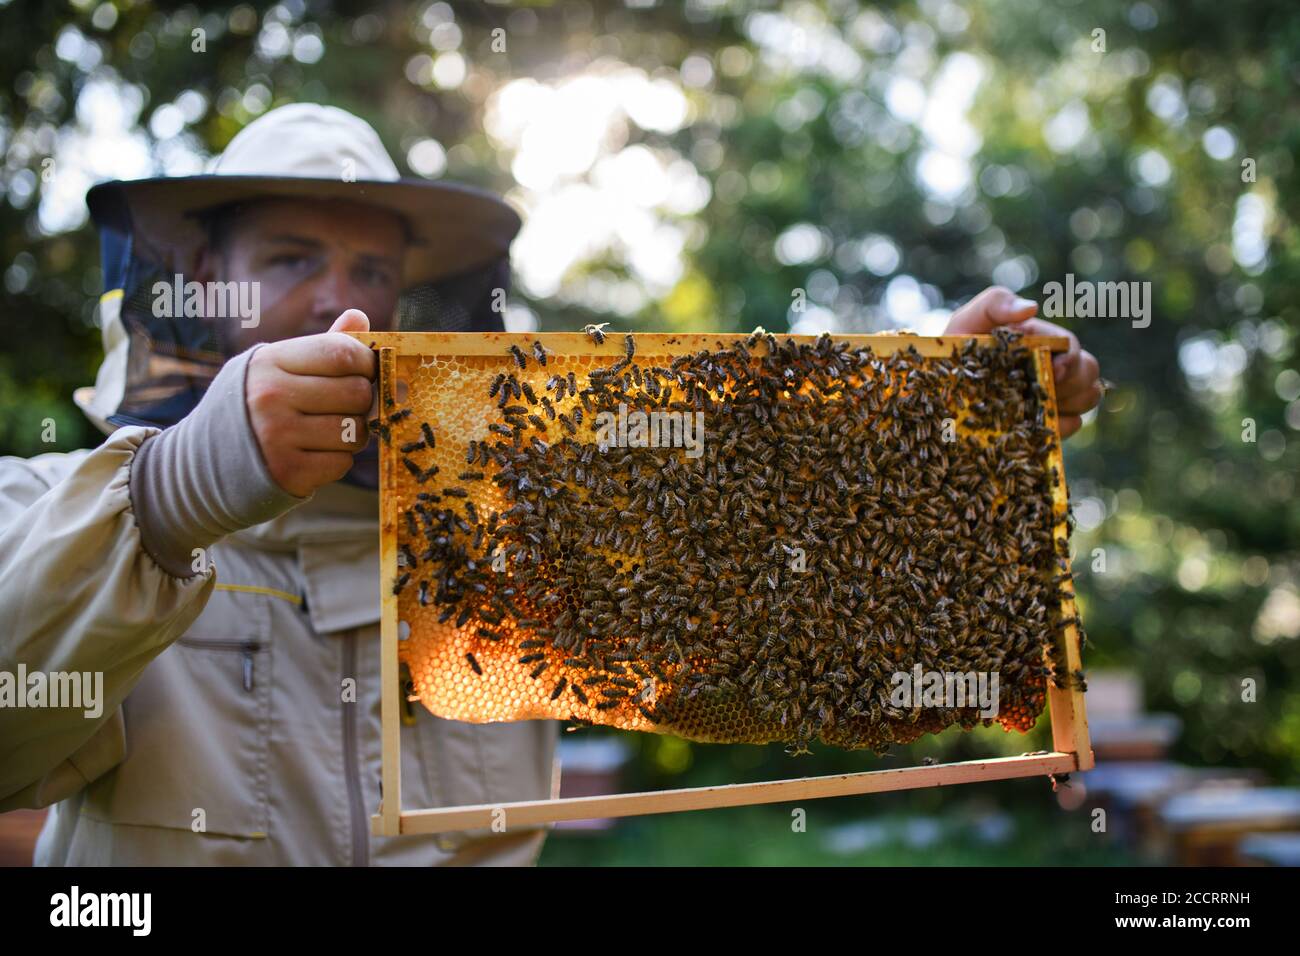 Bienenmann Stockfotos und -bilder Kaufen - Alamy